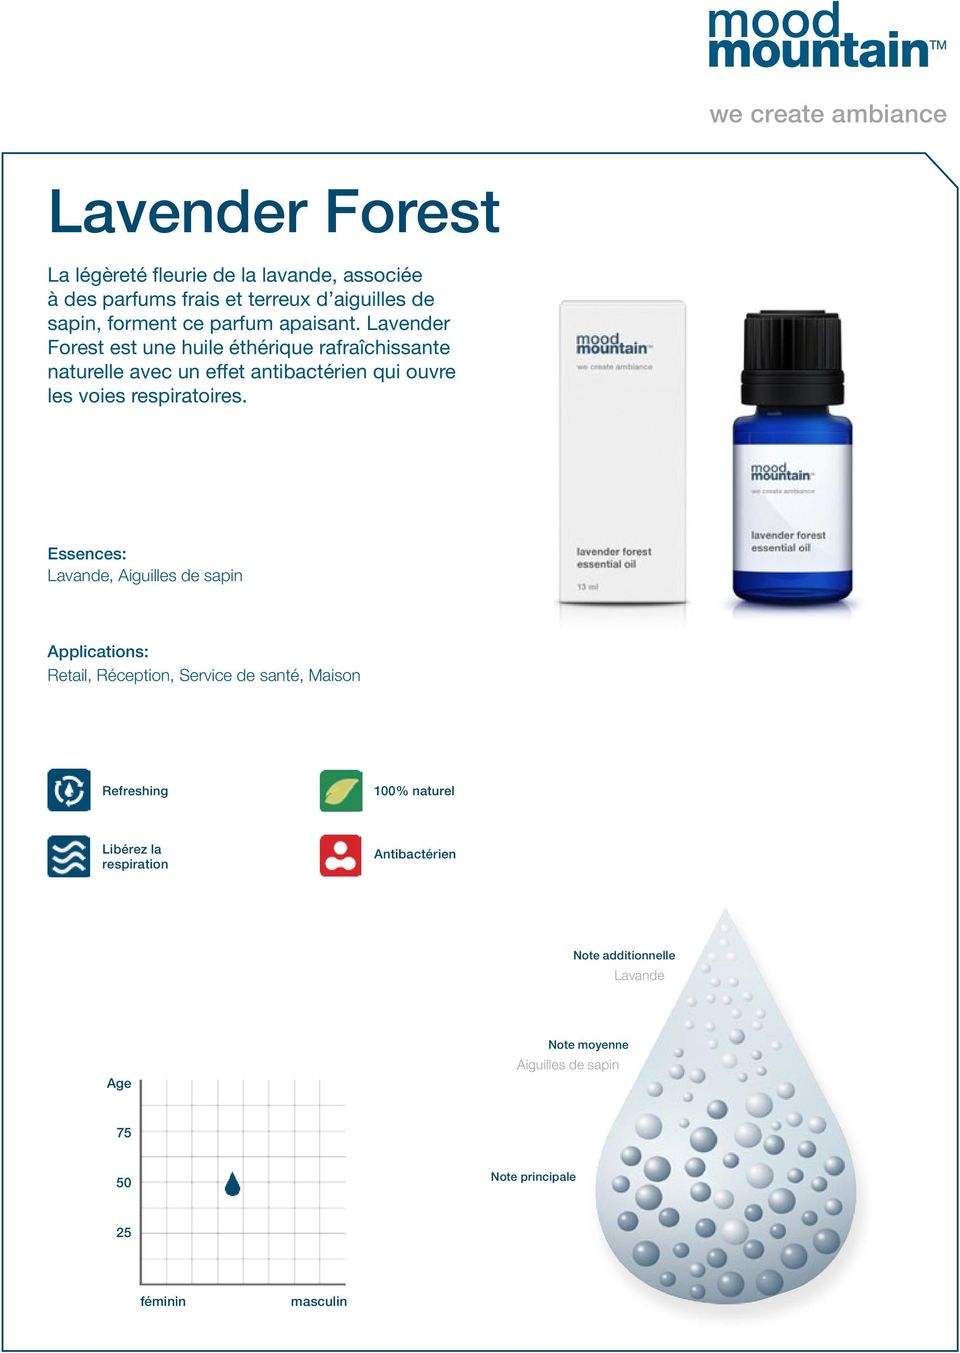 Lavender Forest est une huile éthérique rafraîchissante naturelle avec un effet antibactérien qui ouvre les